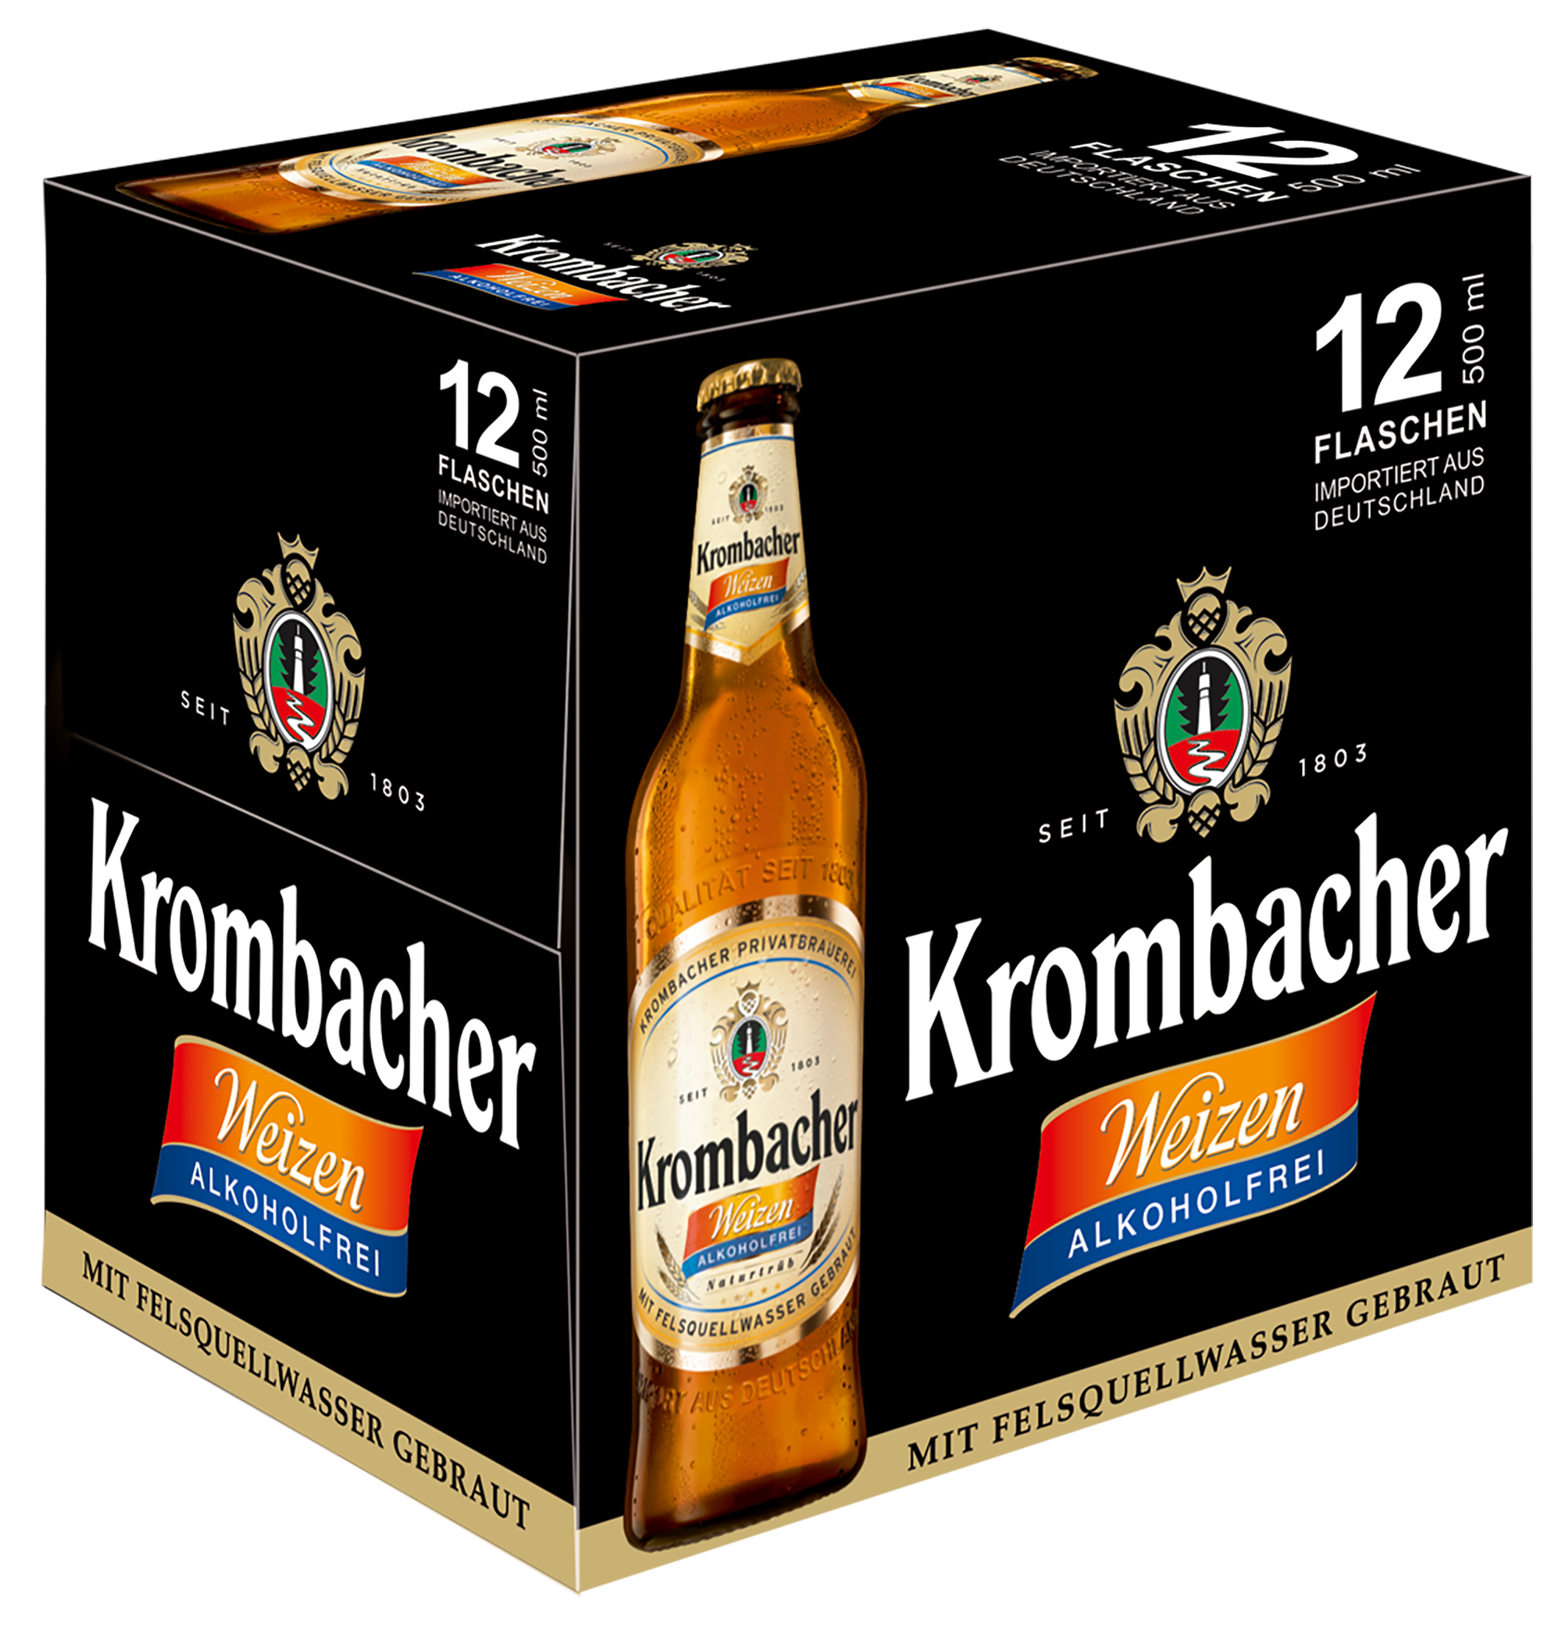 Bere alba fara alcool nefiltrata Krombacher Weizen, 0.0%, Sticla 0.5L, 6 bucati